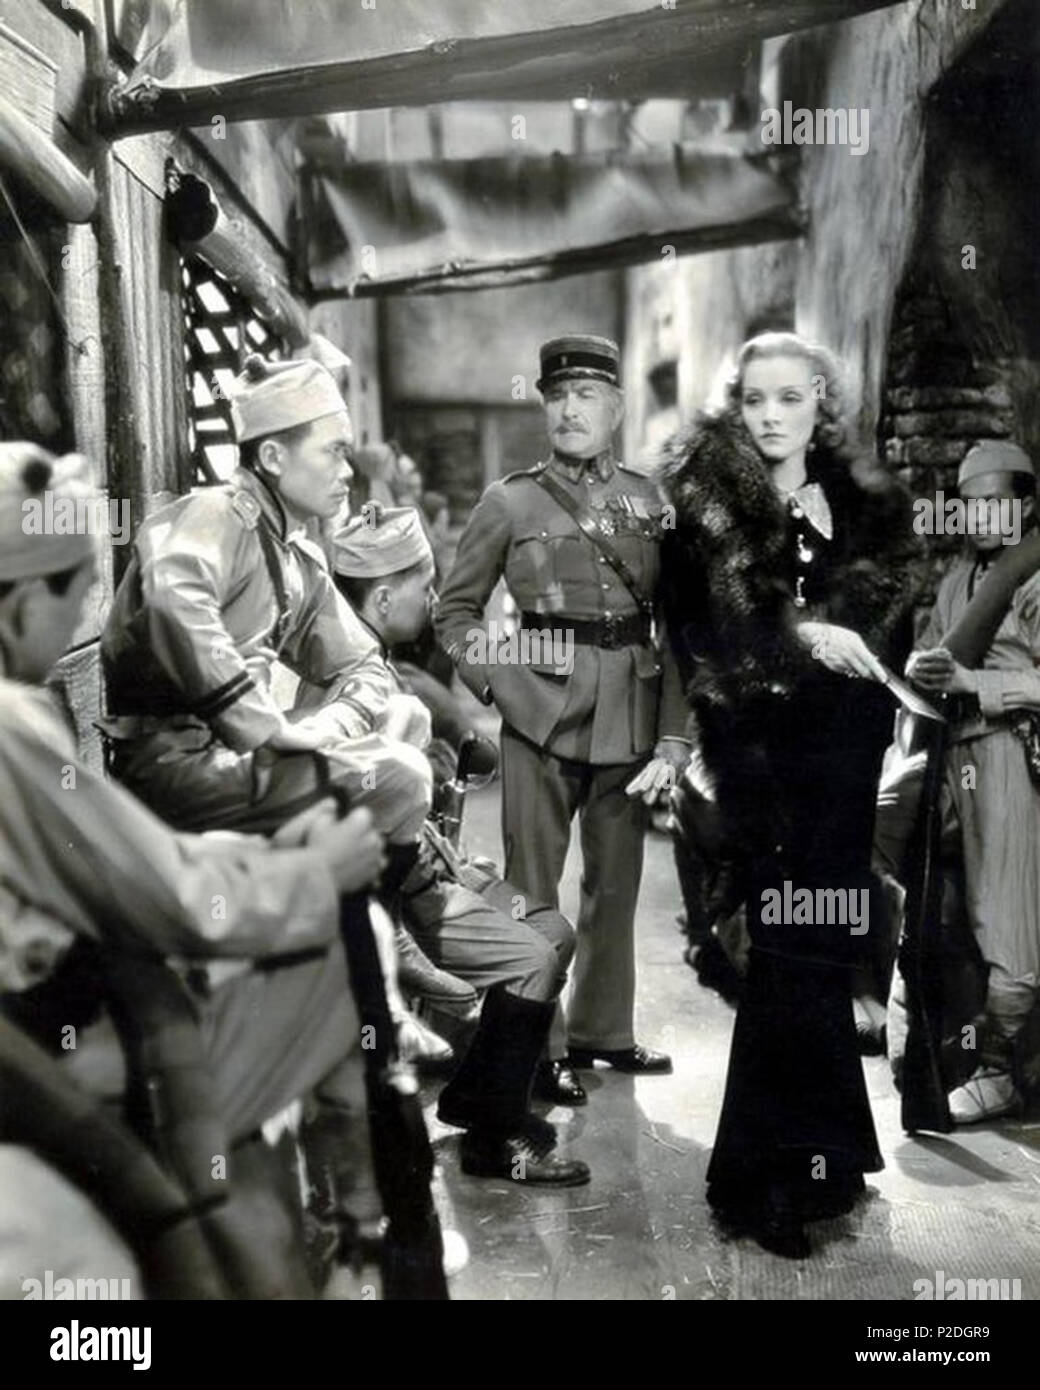 51 Shanghai Express (film) 1932. Josef von Sternberg, réalisateur. Debout, de g à d'Émile Chautard et Marlene Dietrich Banque D'Images